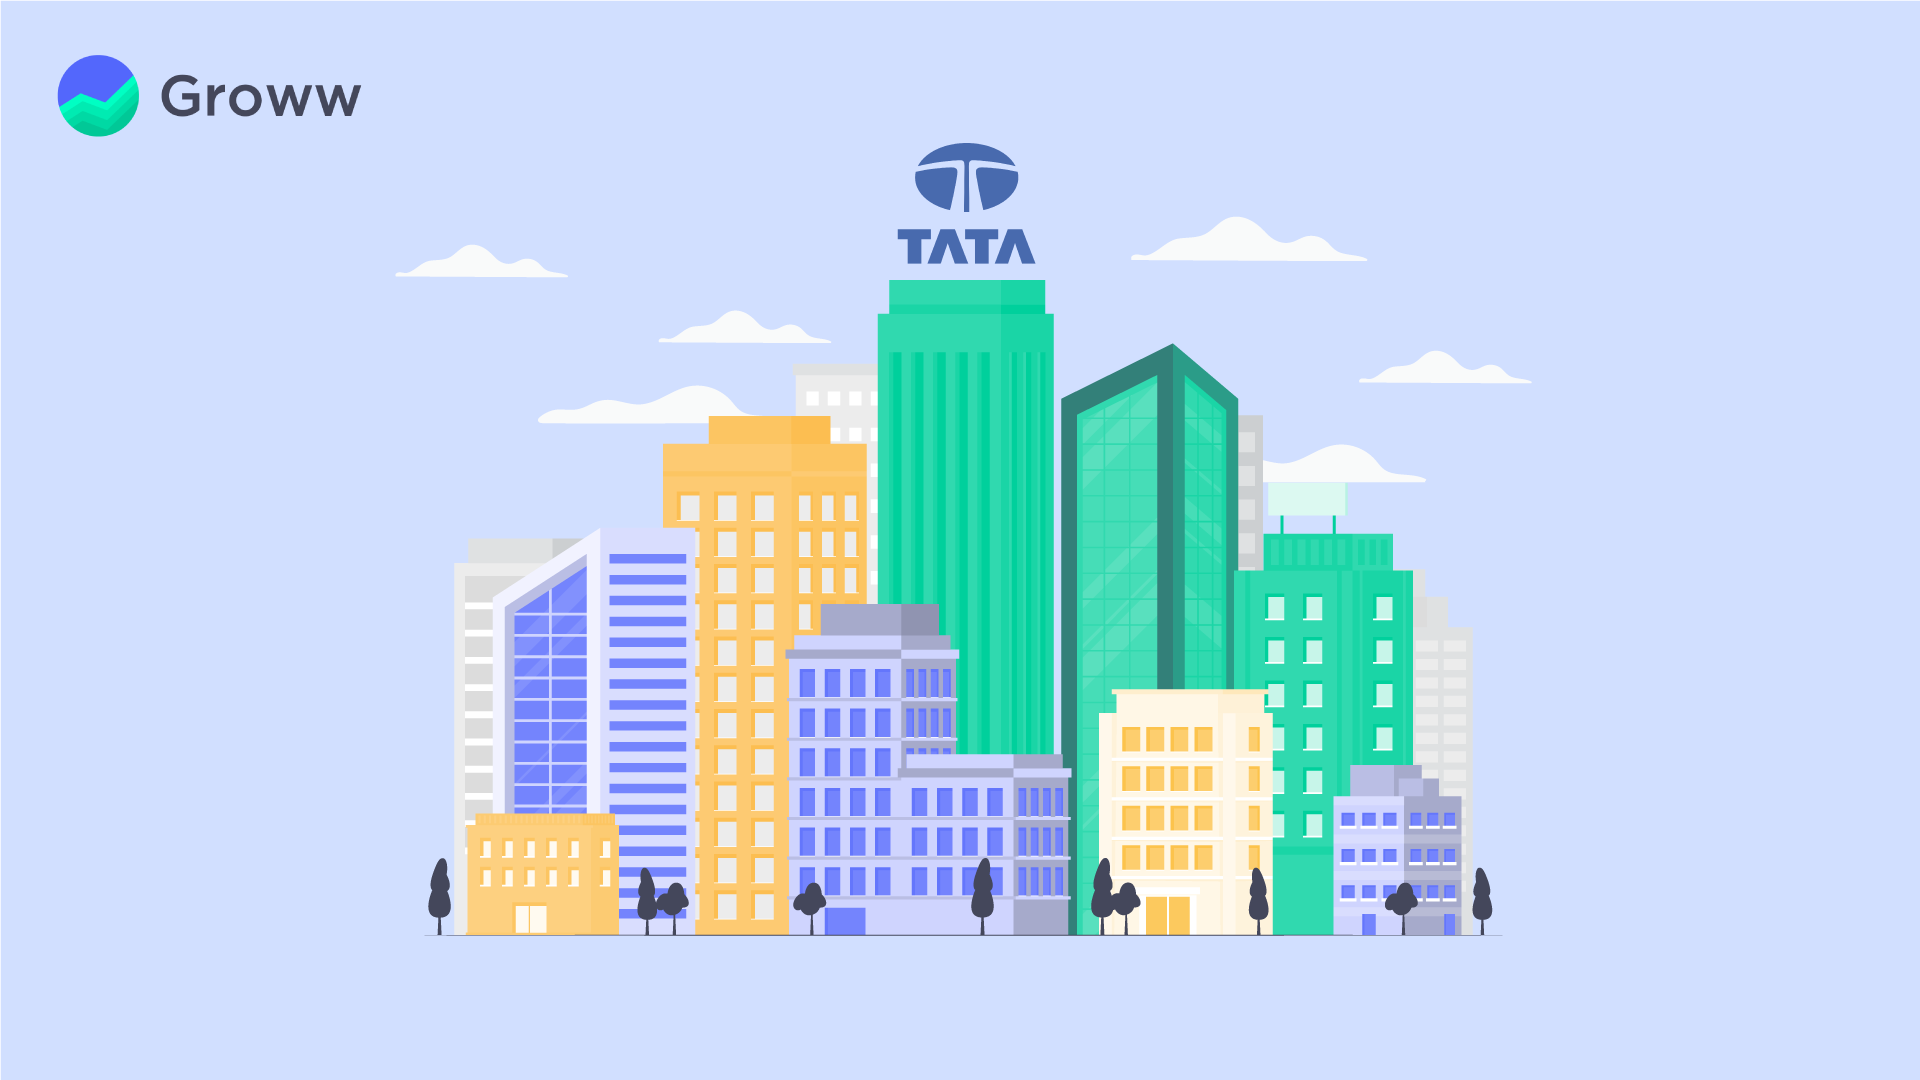 History of Tata Company